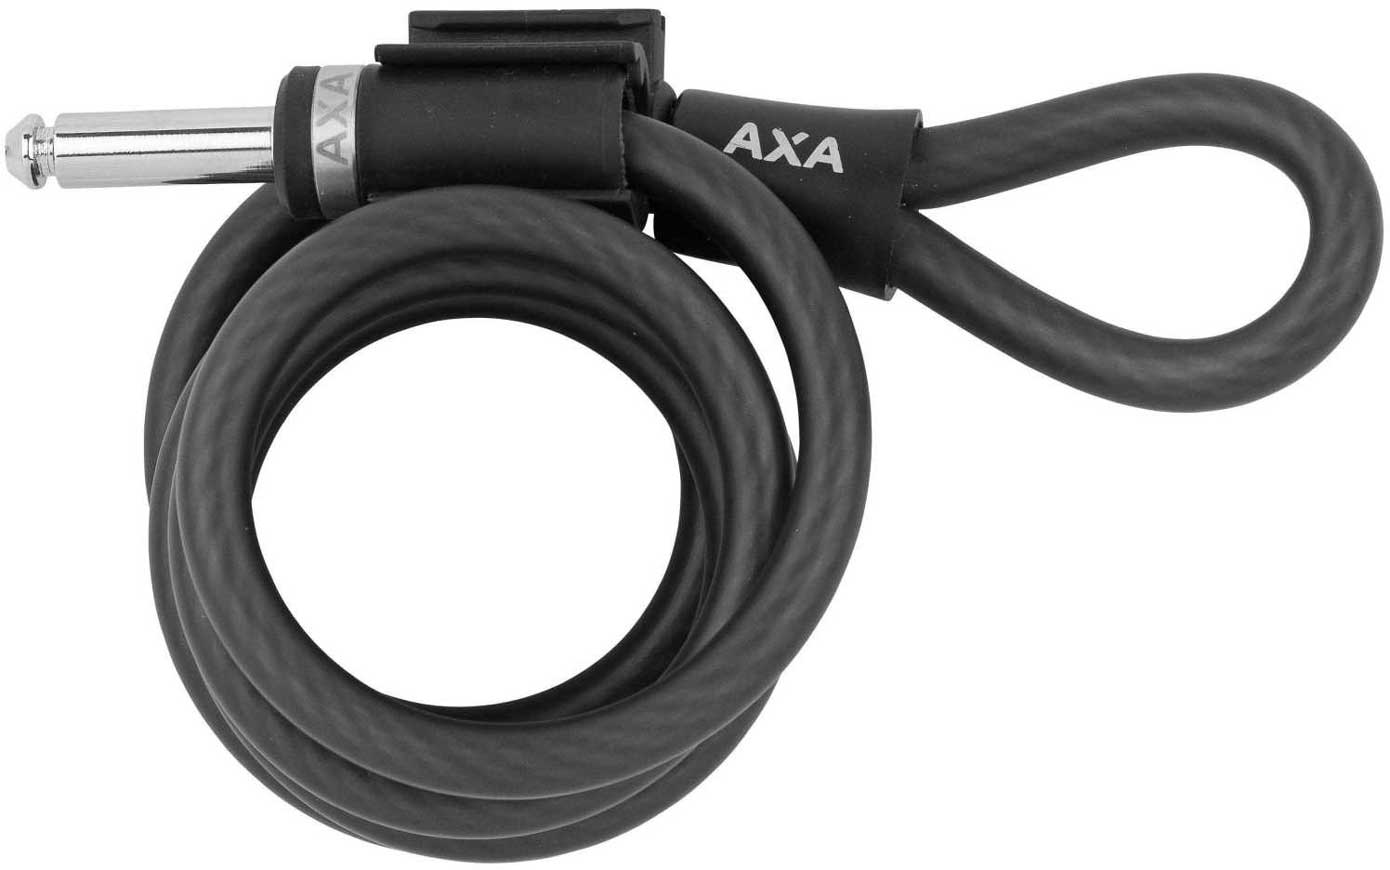 AXA kerékpárzárhoz drótkötél.